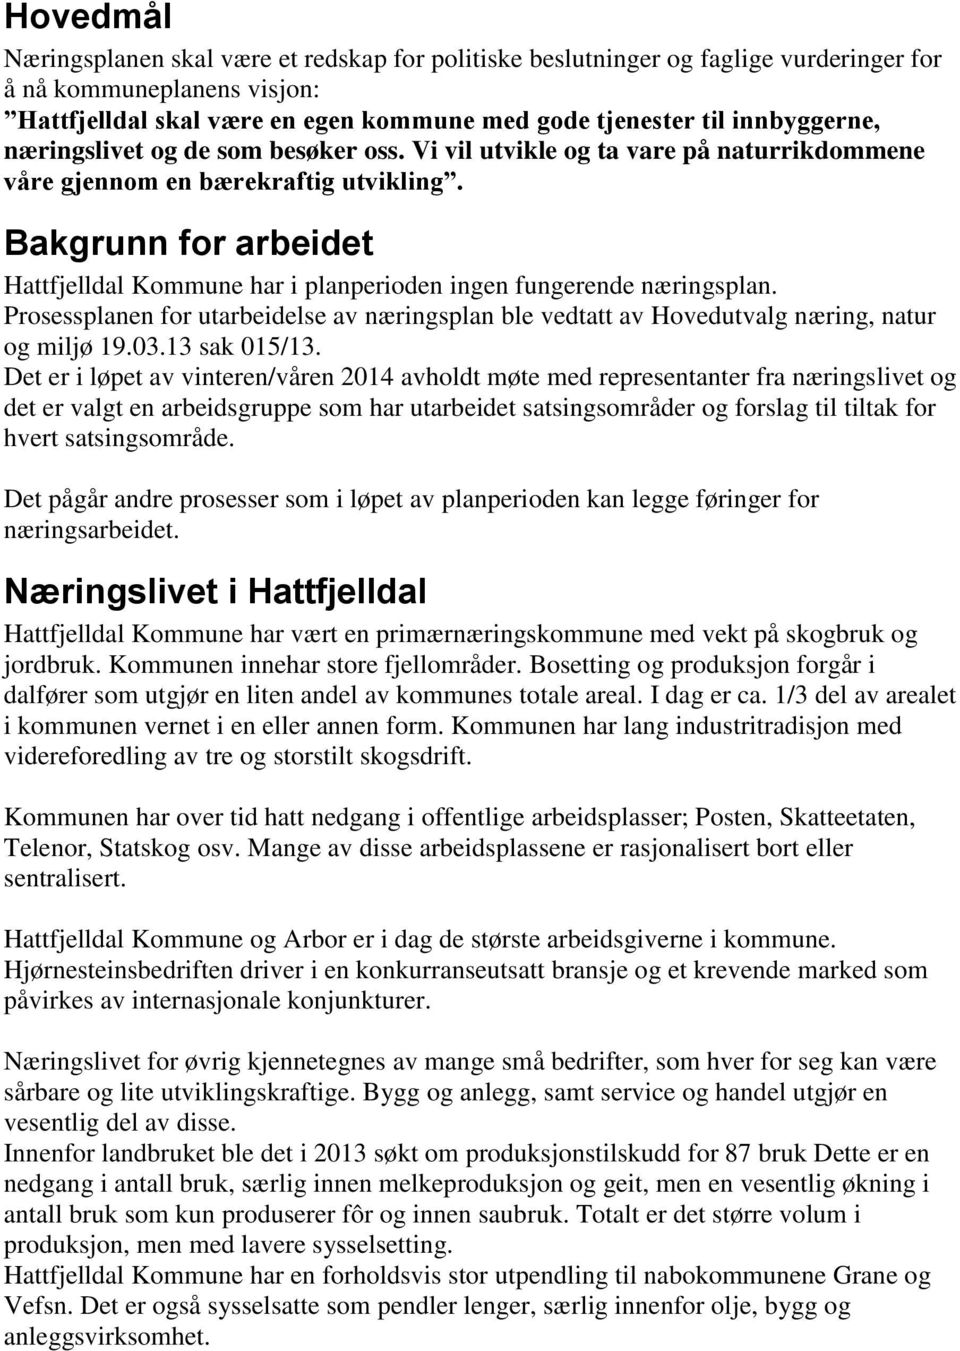 Bakgrunn for arbeidet Hattfjelldal Kommune har i planperioden ingen fungerende næringsplan. Prosessplanen for utarbeidelse av næringsplan ble vedtatt av Hovedutvalg næring, natur og miljø 19.03.